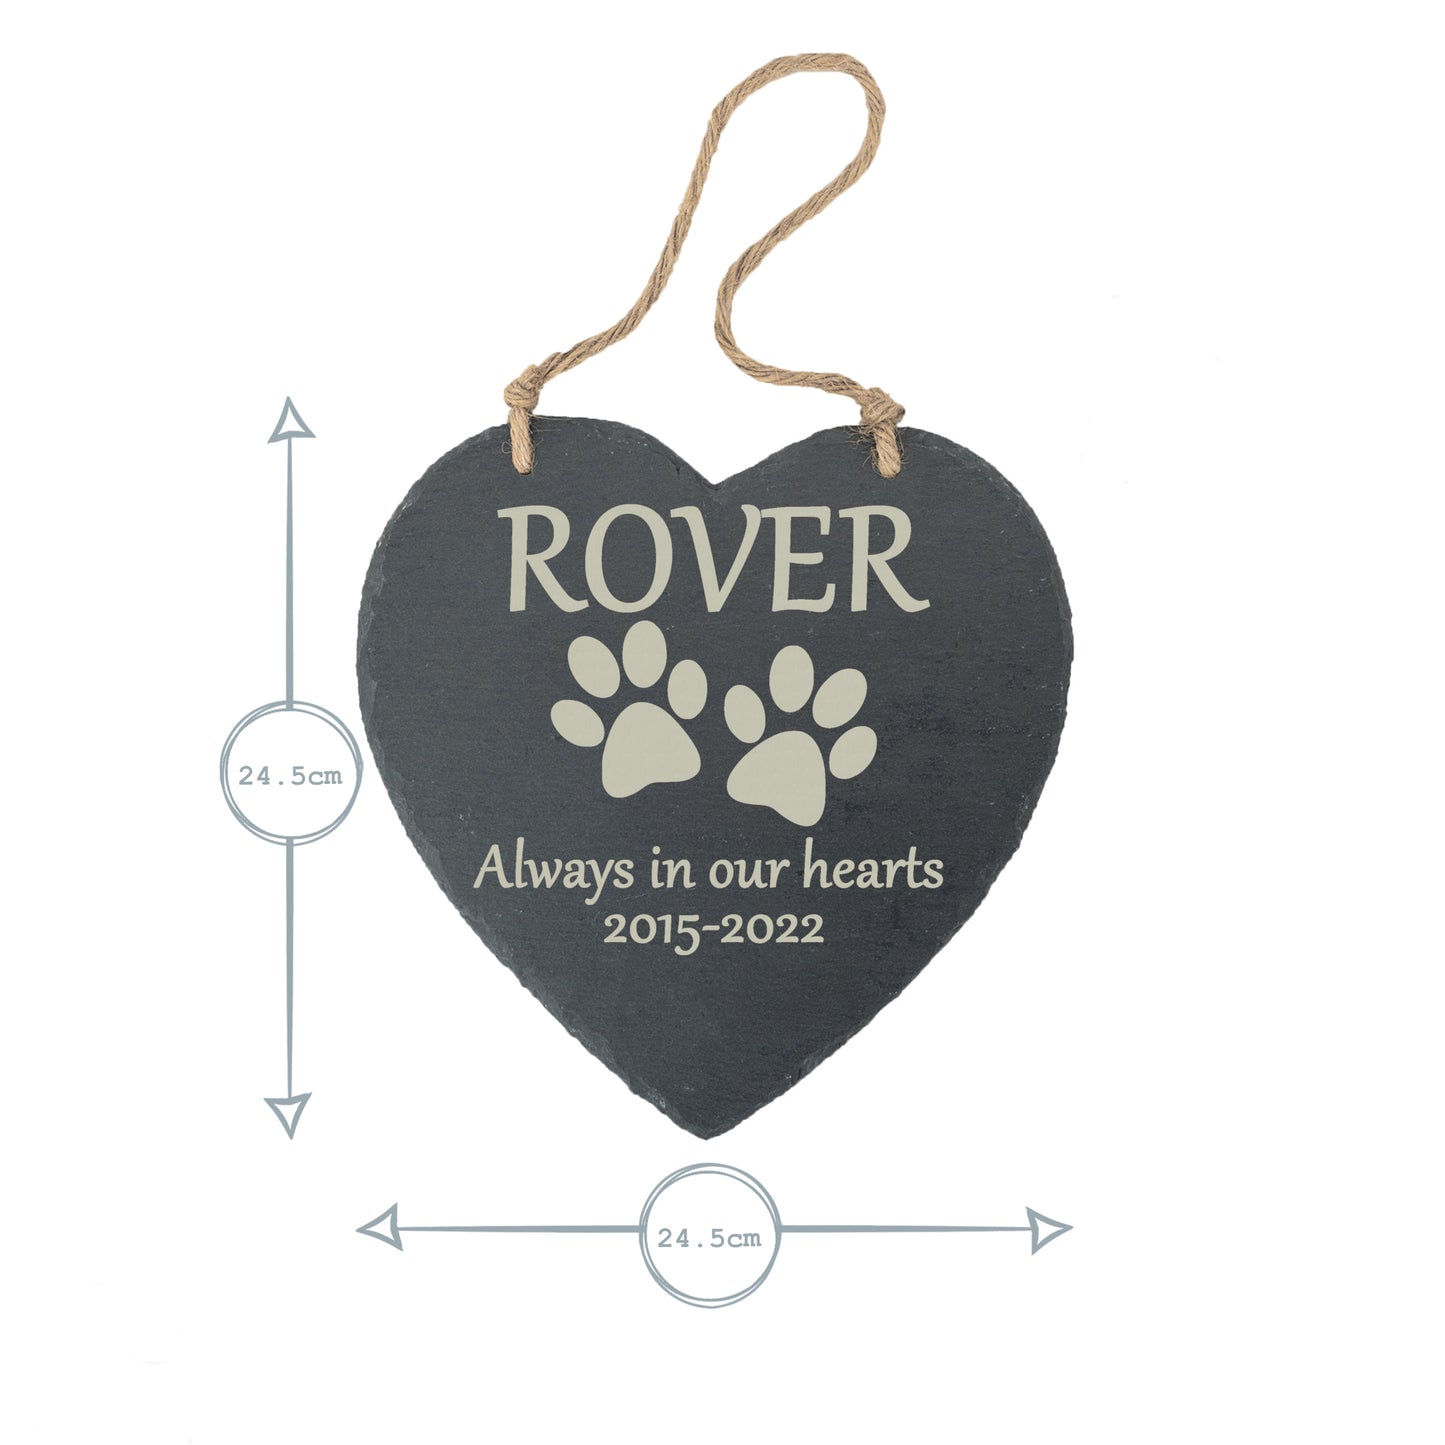 Dog Memorial Large Hanging Slate Heart Plaque- Personalised Laser Engraved Large Memorial/Grave Marker